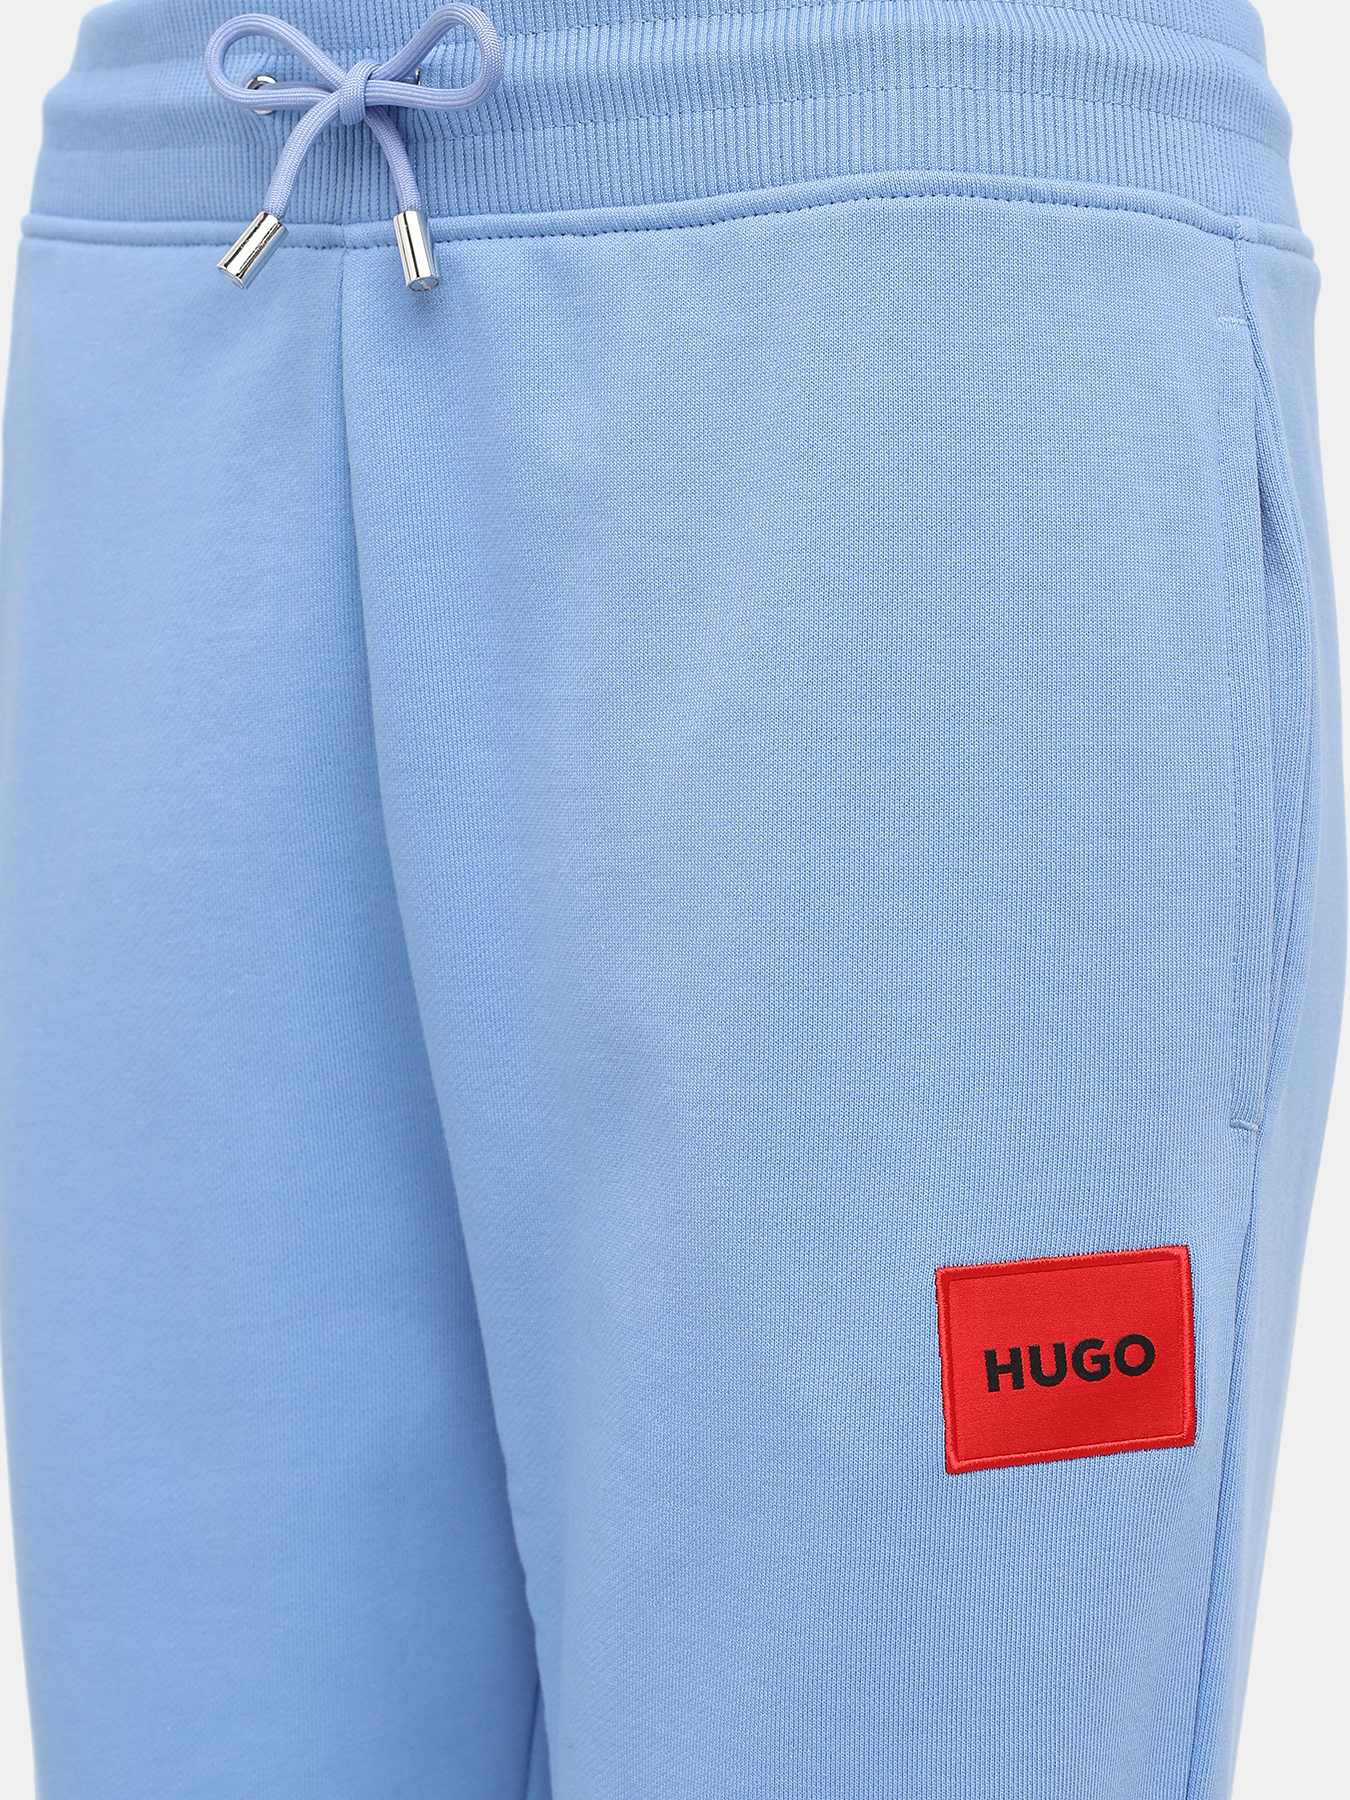 Спортивные брюки Dachibi HUGO 420747-043, цвет голубой, размер 44-46 - фото 2